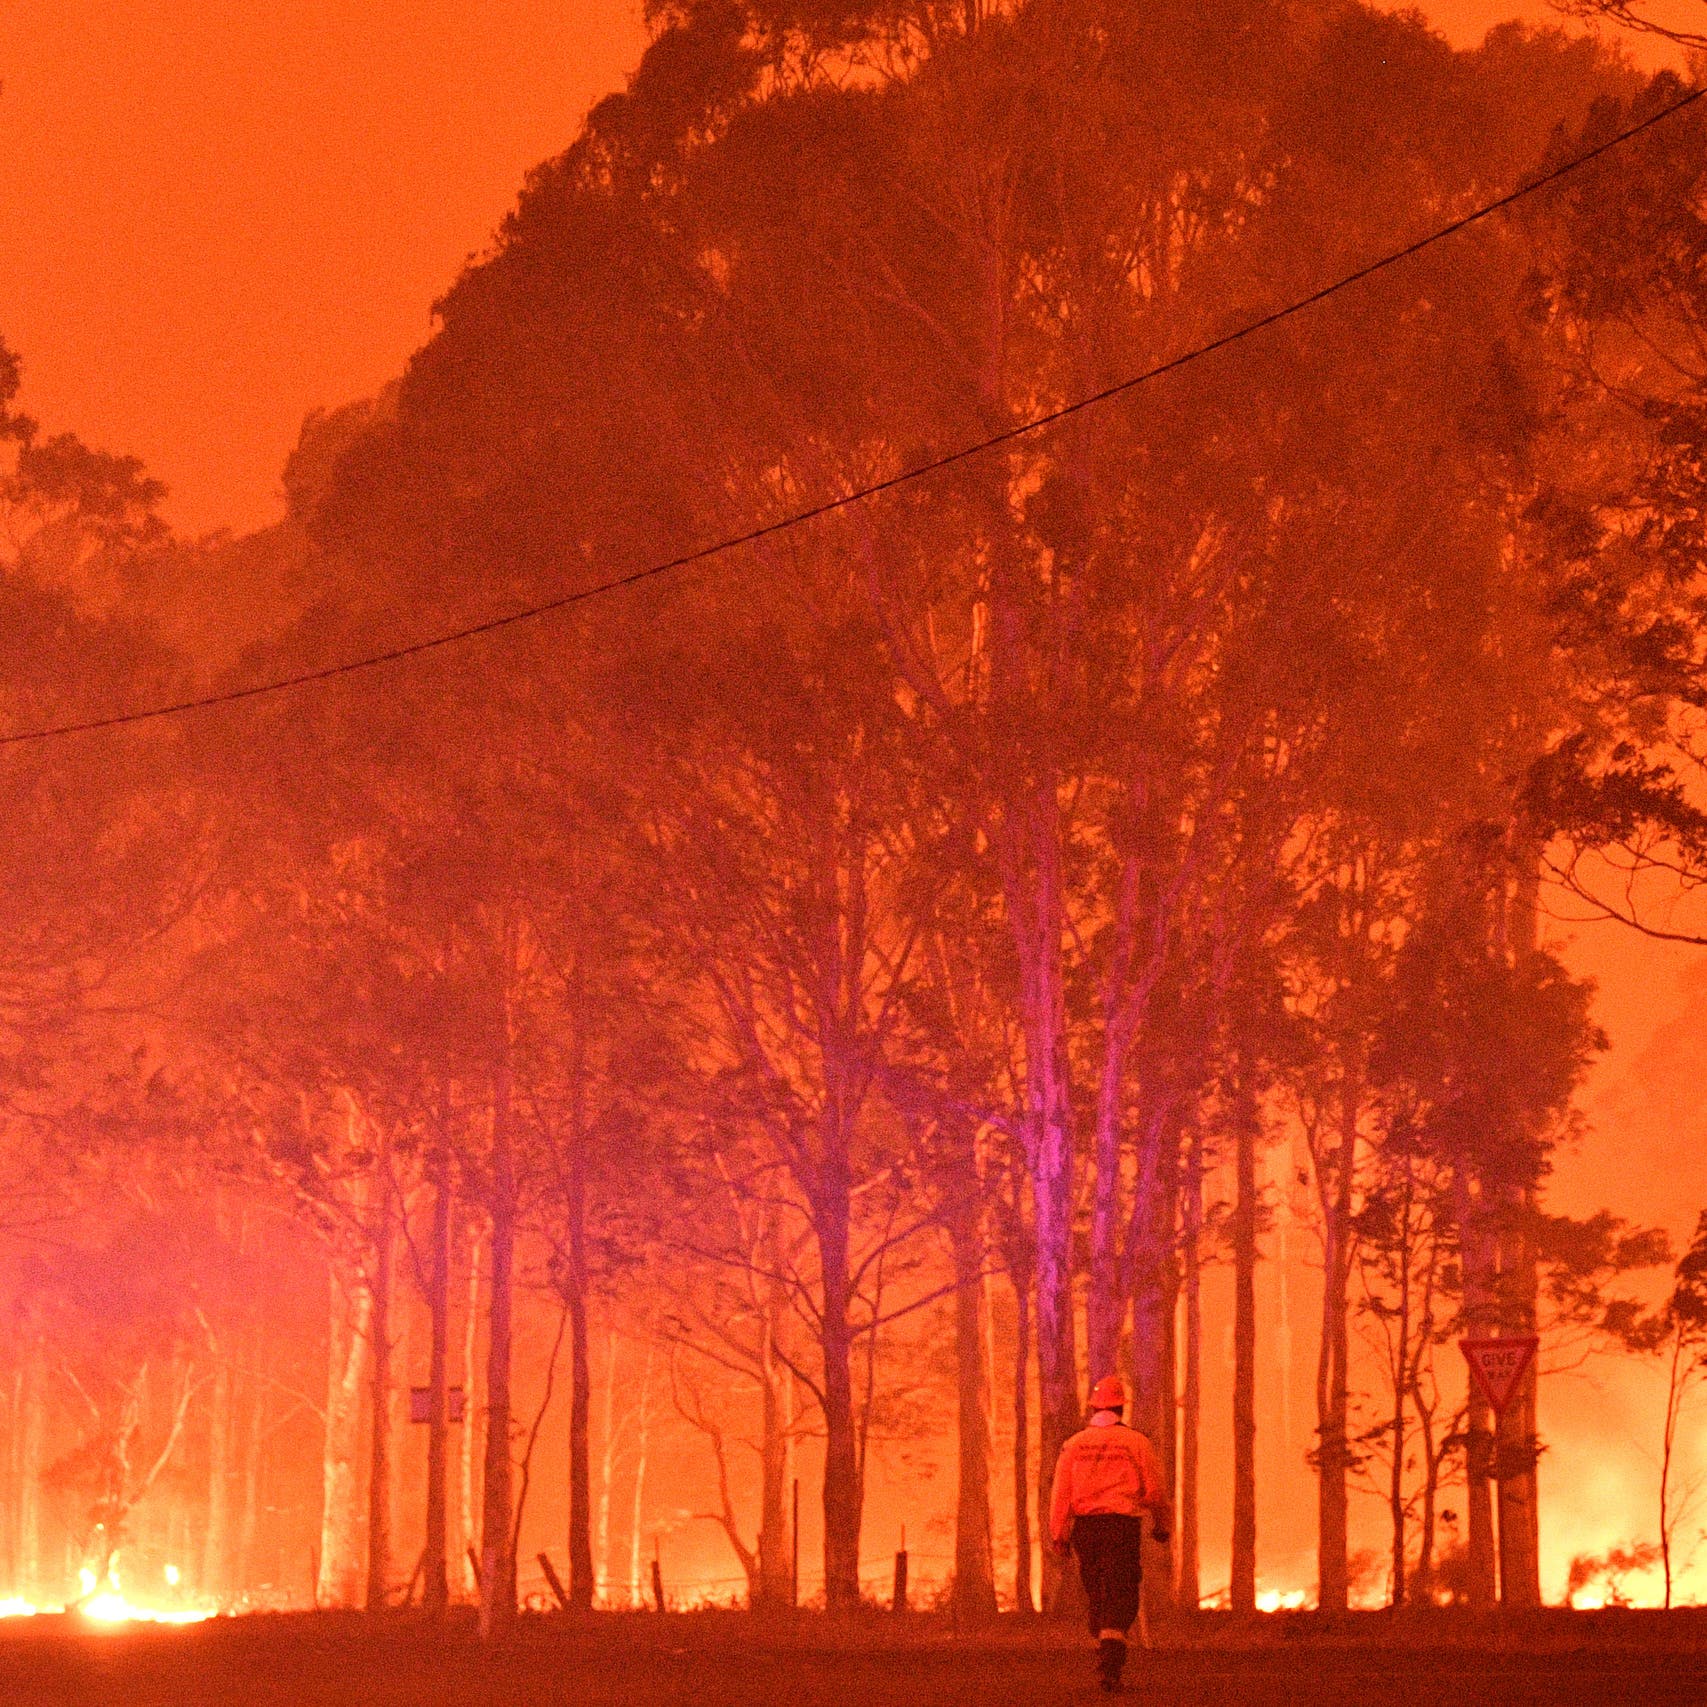 عواصف تؤدي الى إخماد الحرائق في شرق أستراليا